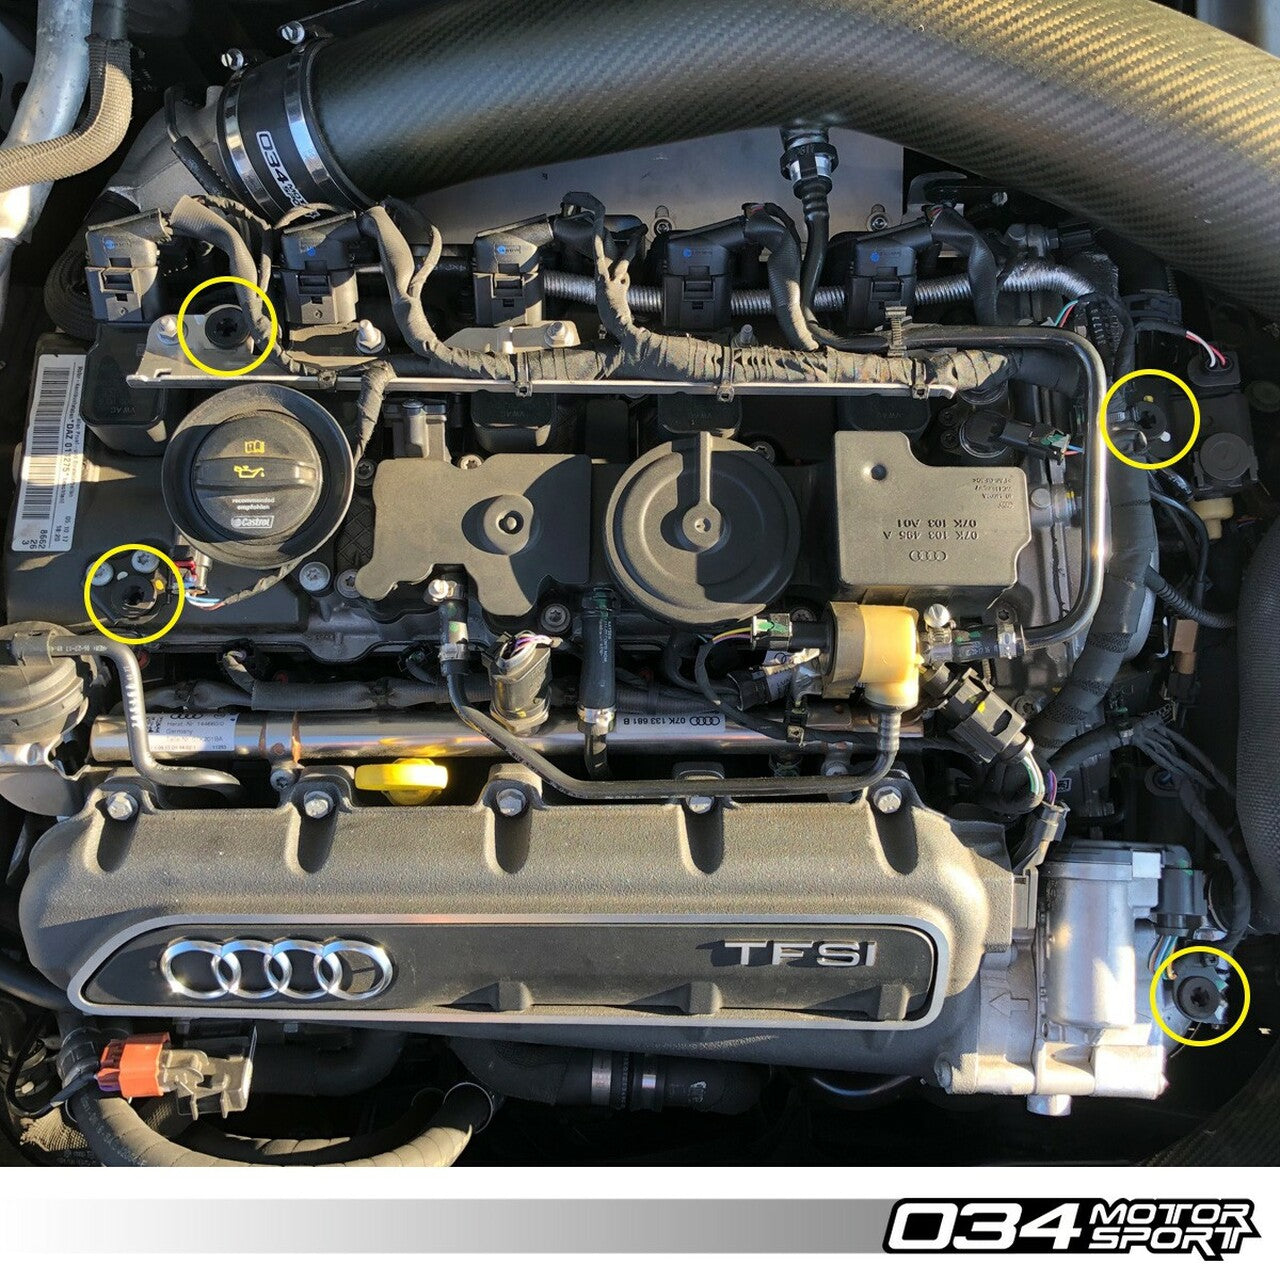 034Motorsport - Motorsport Density Engine Cover Grommets - TTRS 8S & RS3 8V